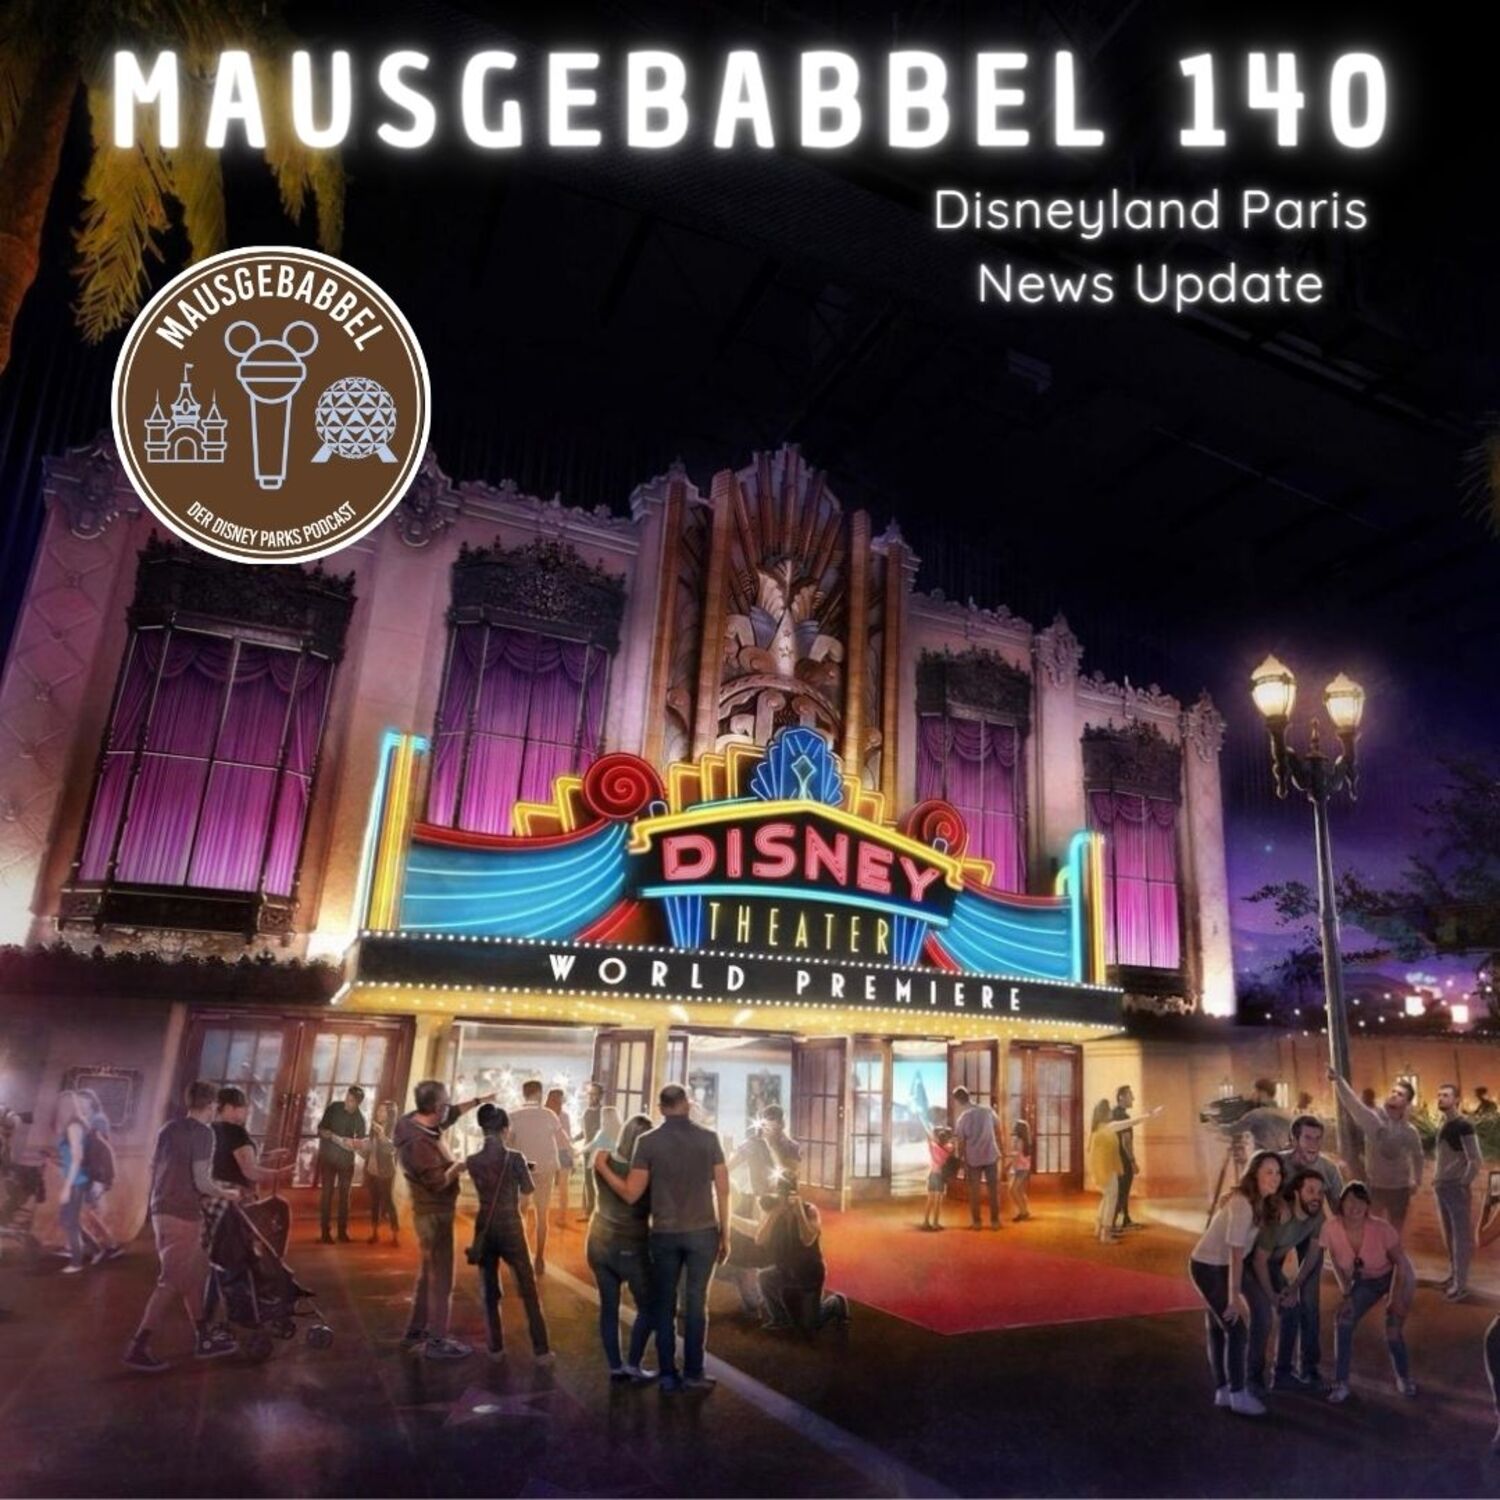 Mausgebabbel 140 – Disneyland Paris News Update